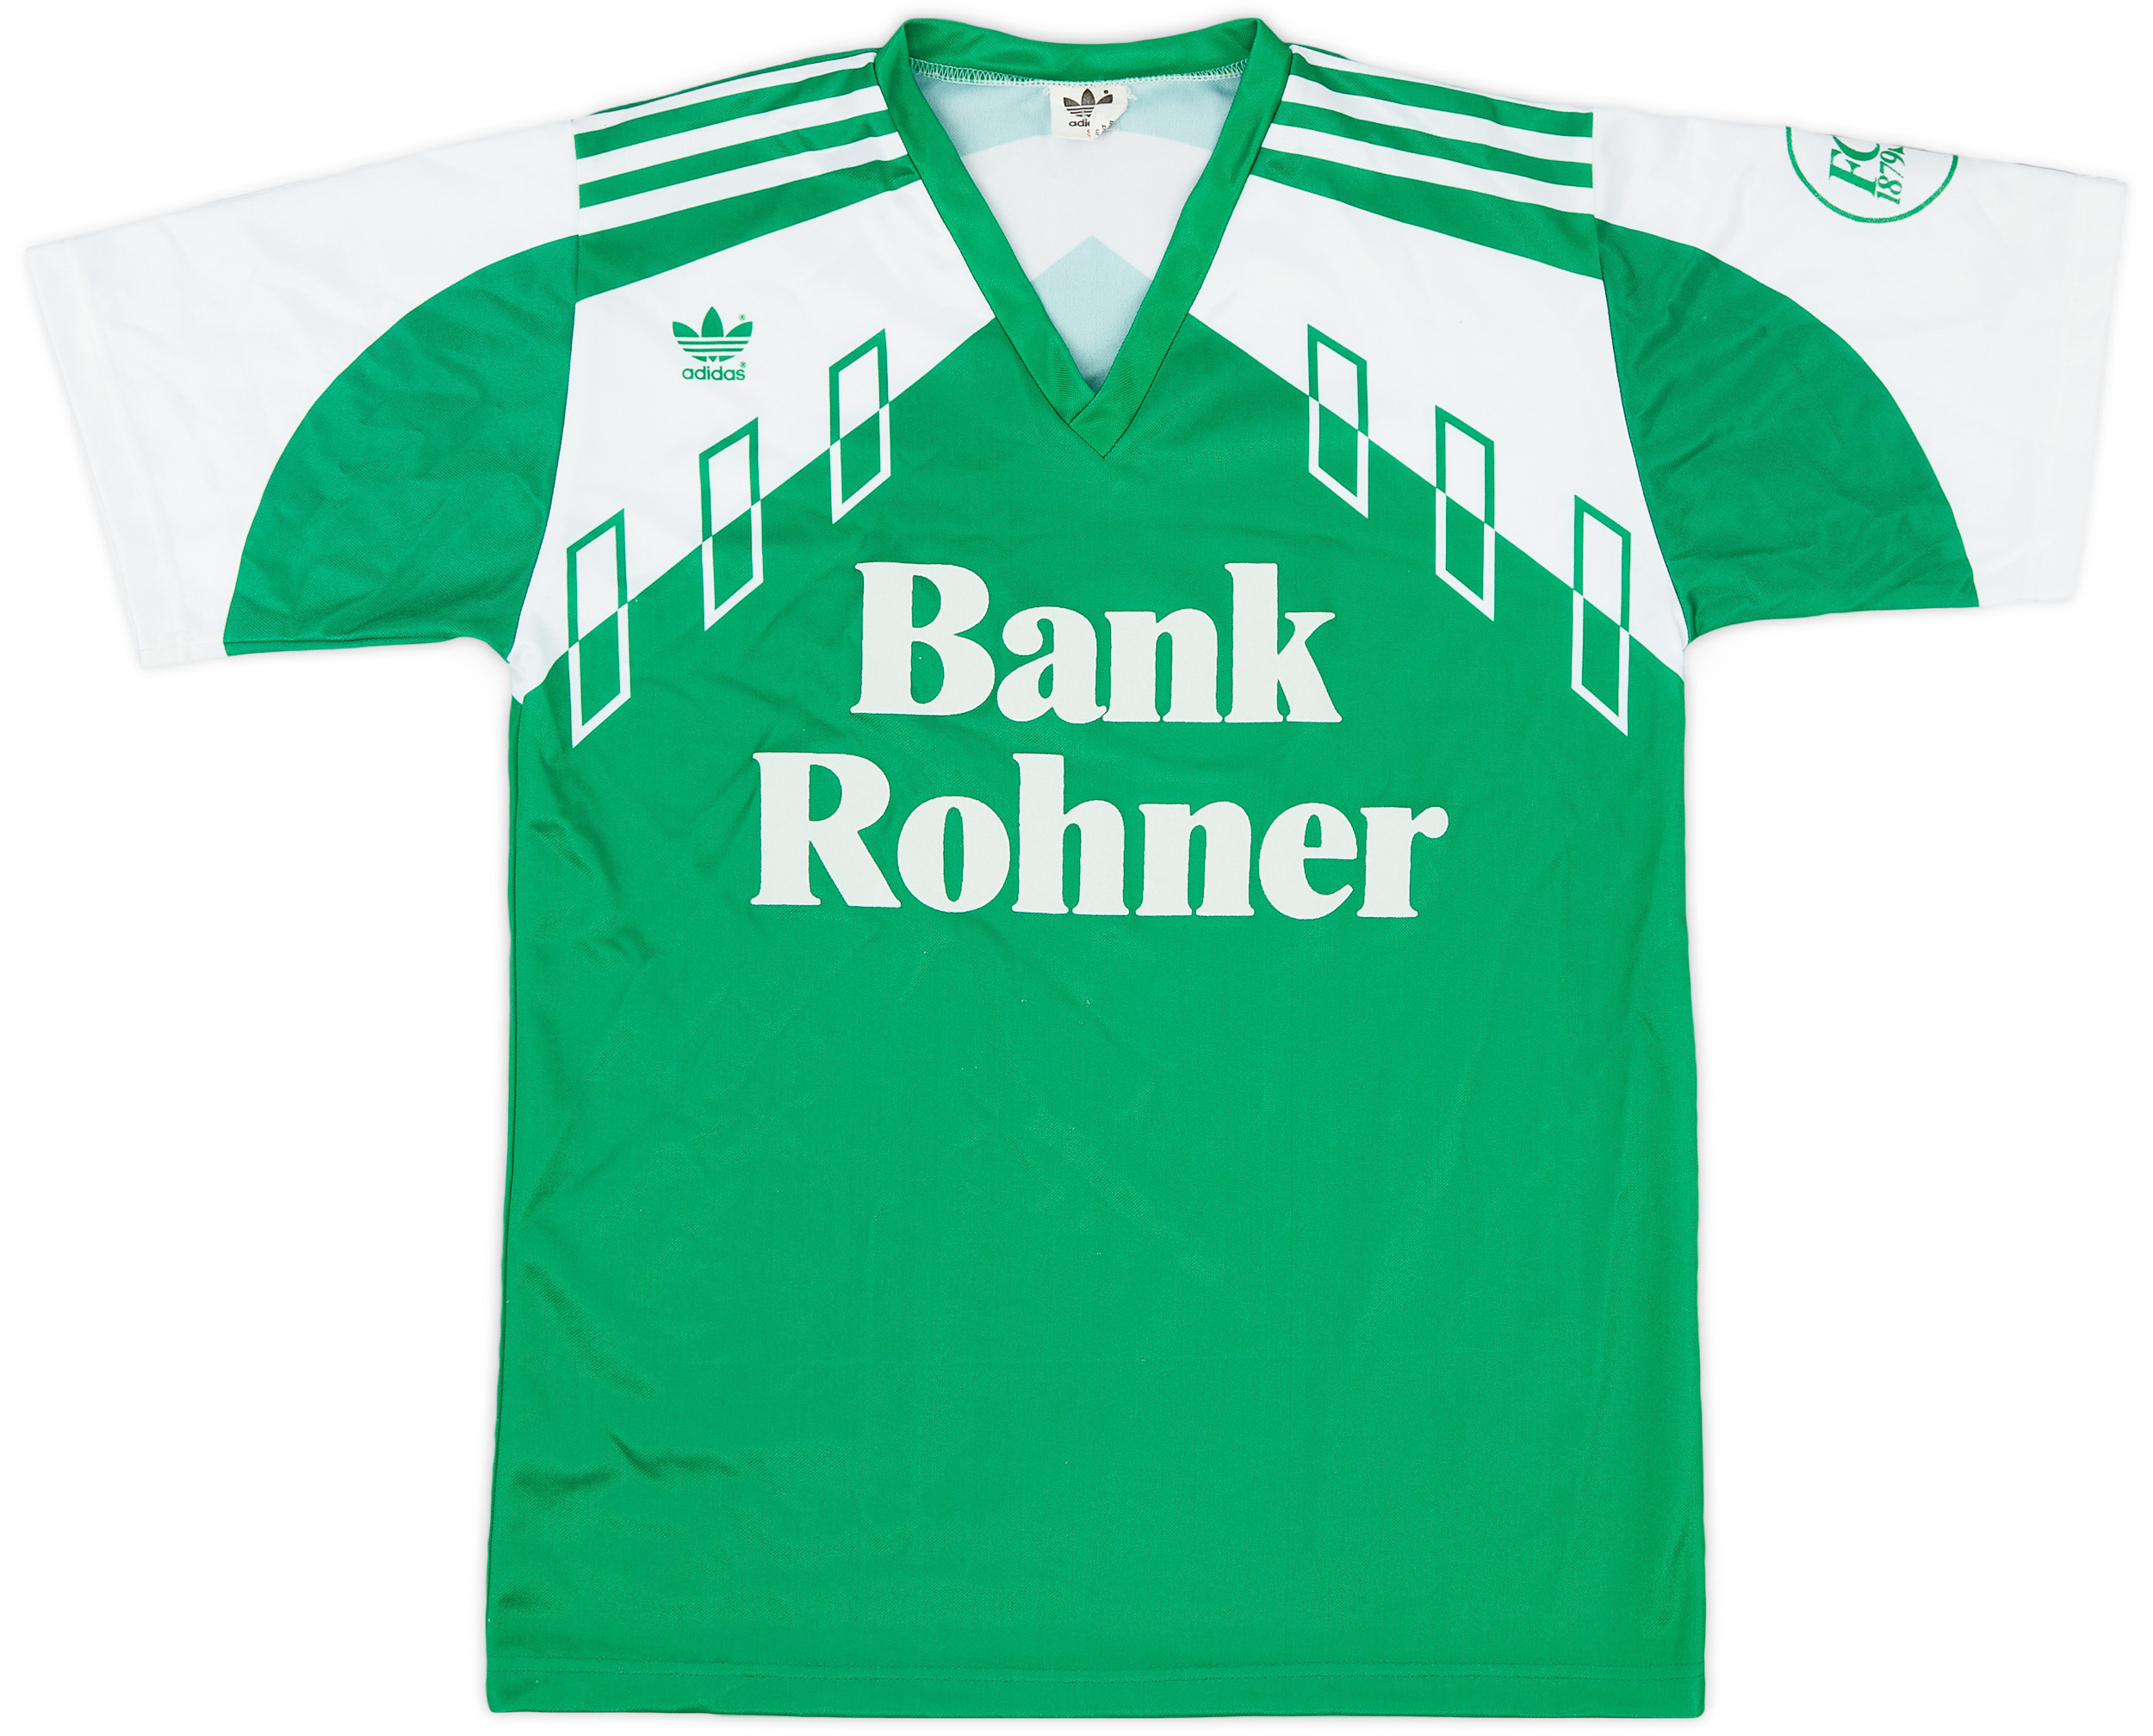 Retro St. Gallen Shirt